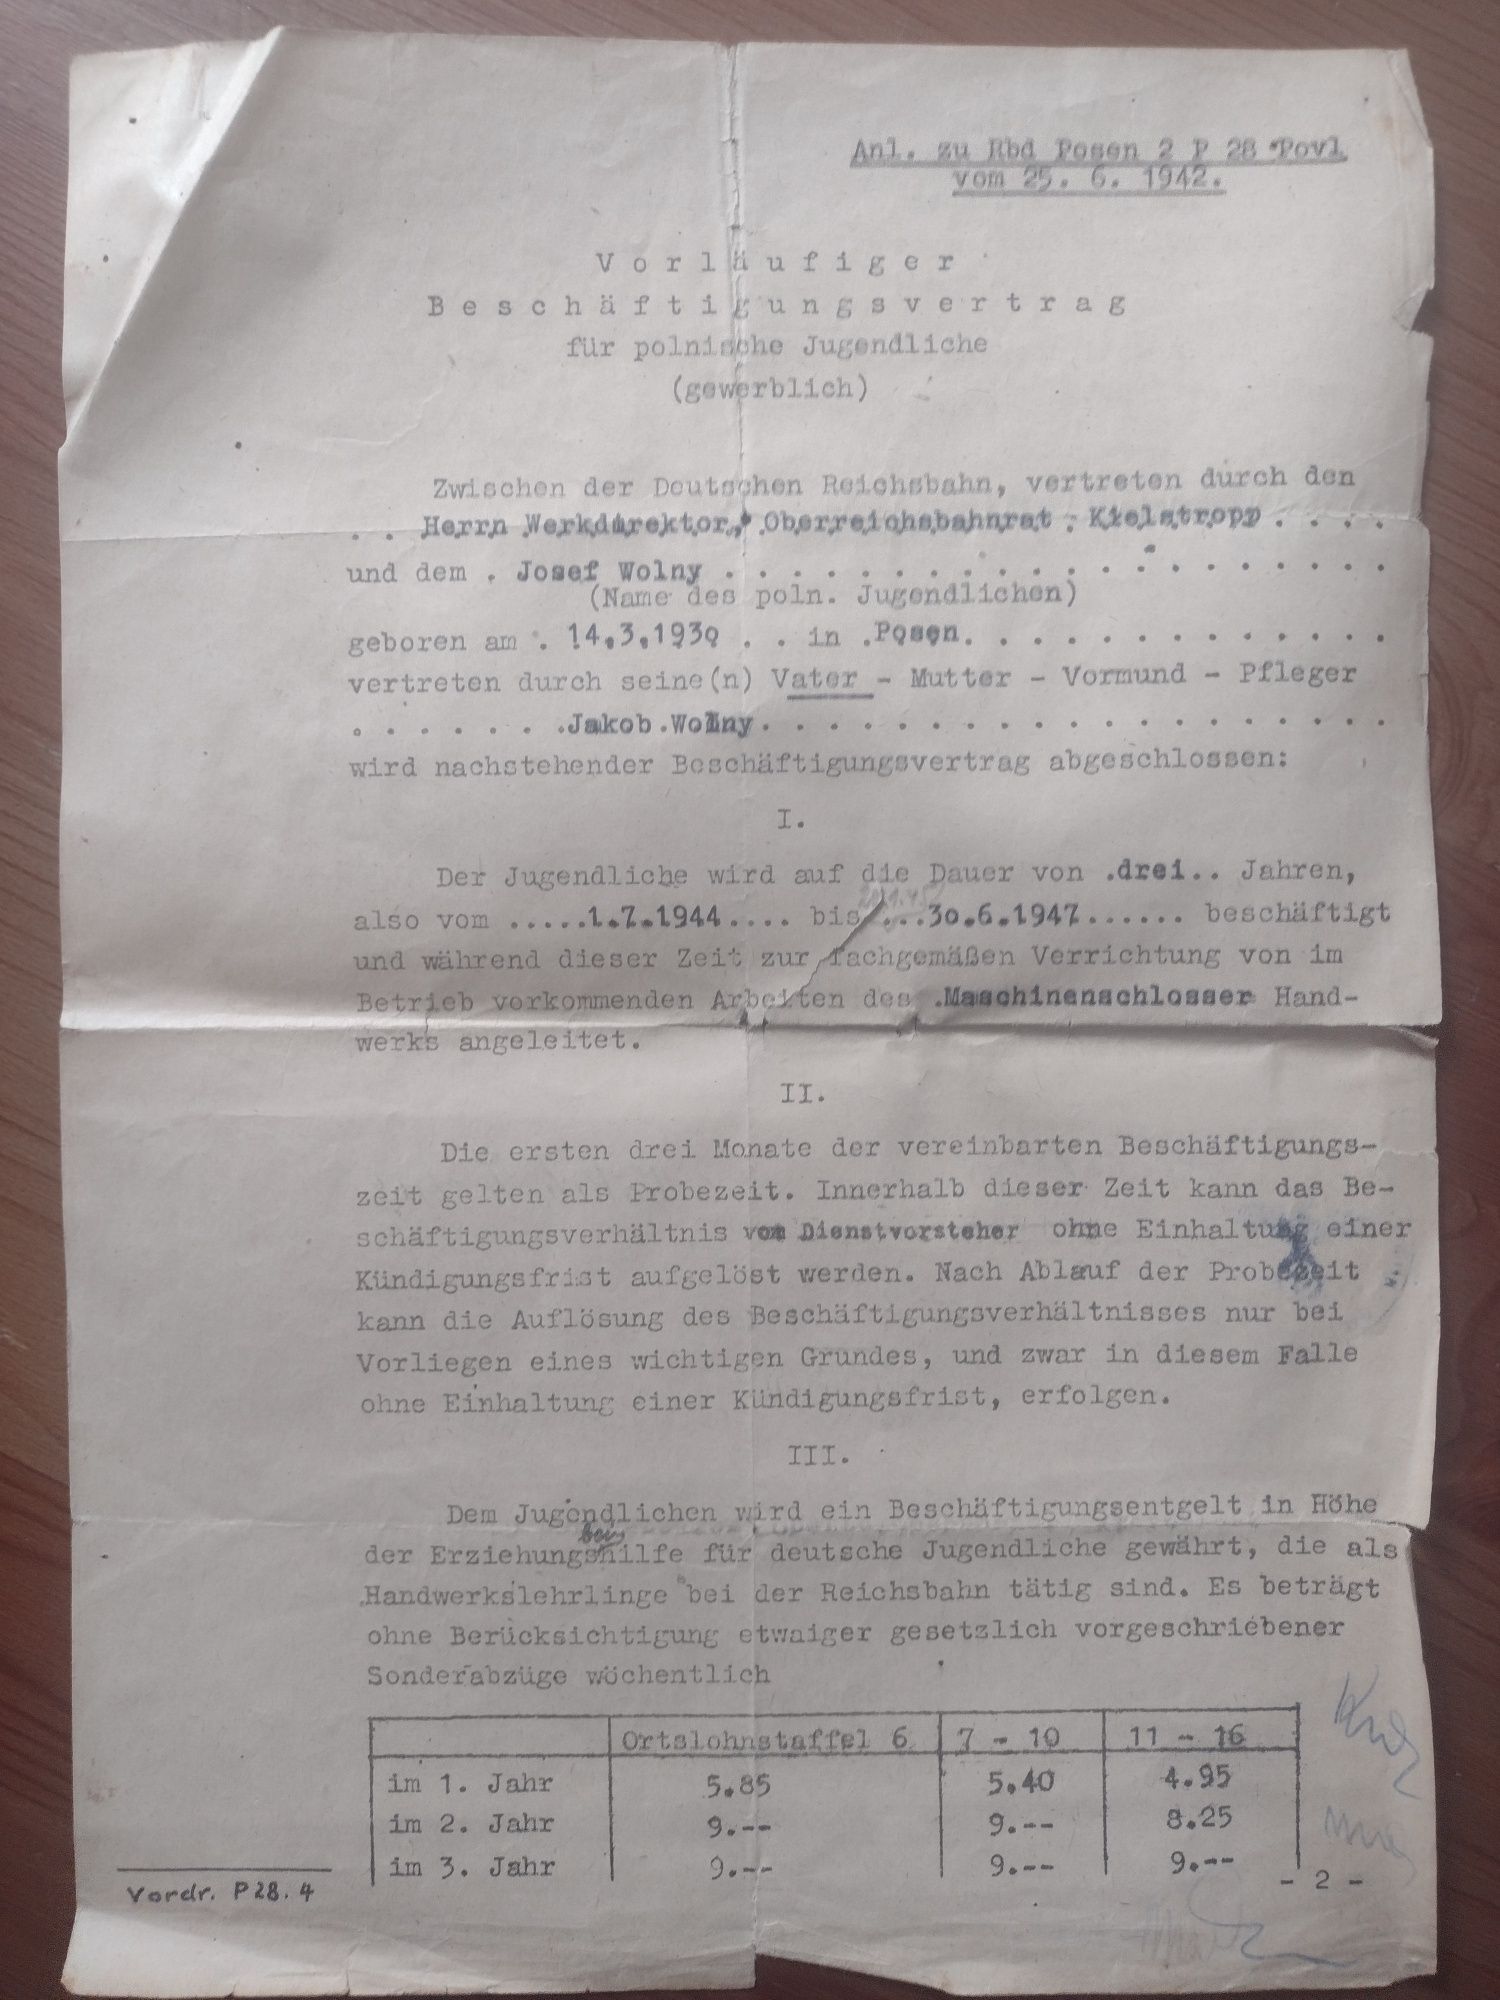 Deutschen reichsbahn Posen 1942 dokument
60
 zł